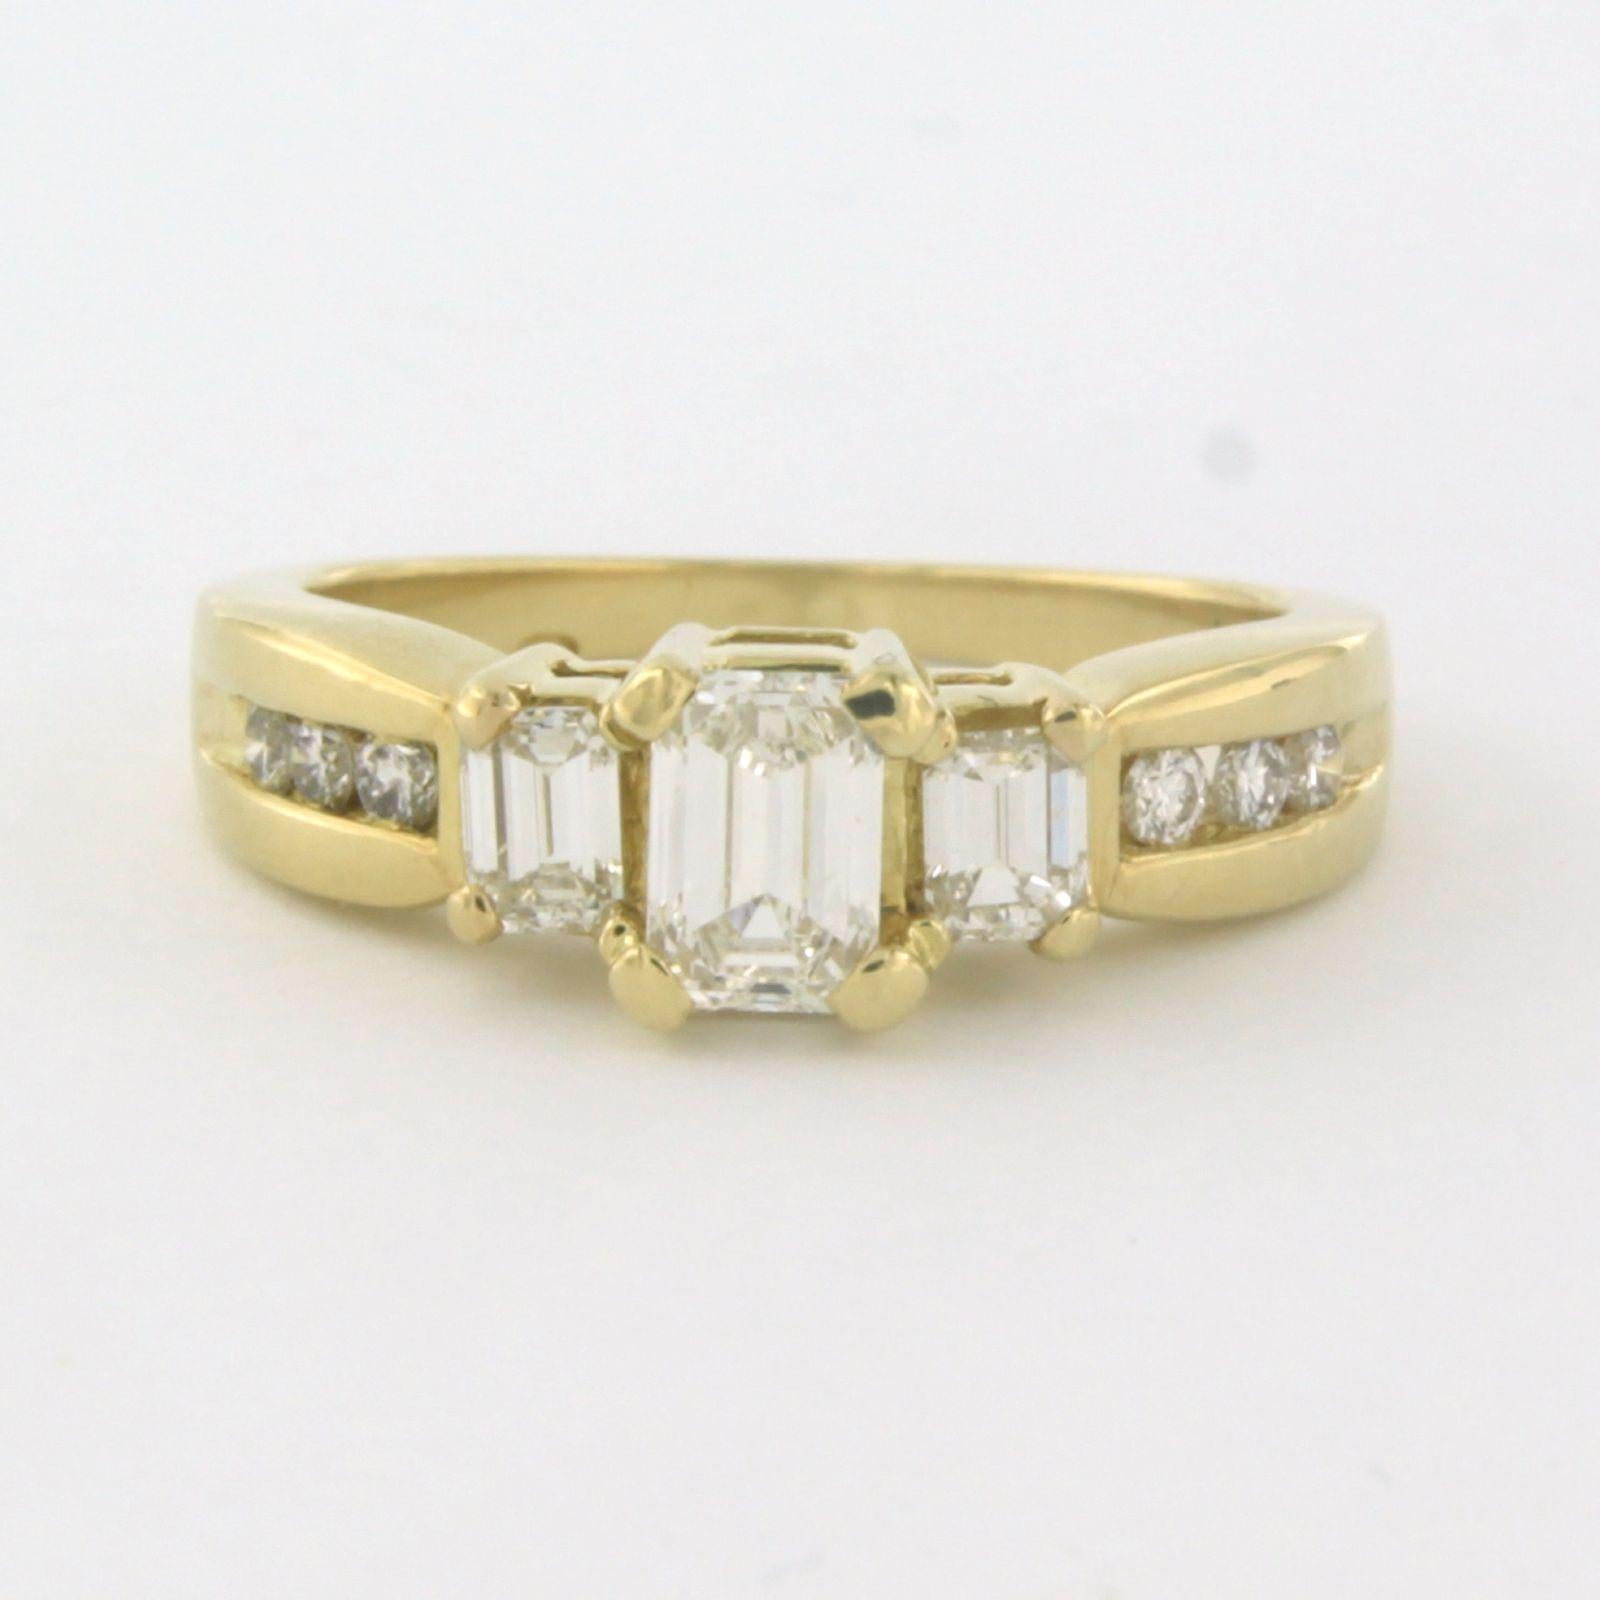 Ring aus 14 Karat Gelbgold, besetzt mit Diamanten im Smaragd- und Brillantschliff. 1.10ct - F/G - VS/SI - Ringgröße U.S. 6 - EU. 16.5(52)

Ausführliche Beschreibung

die Oberseite des Rings ist 6,3 mm breit und 7,2 mm hoch

Ringgröße US 6 - EU.